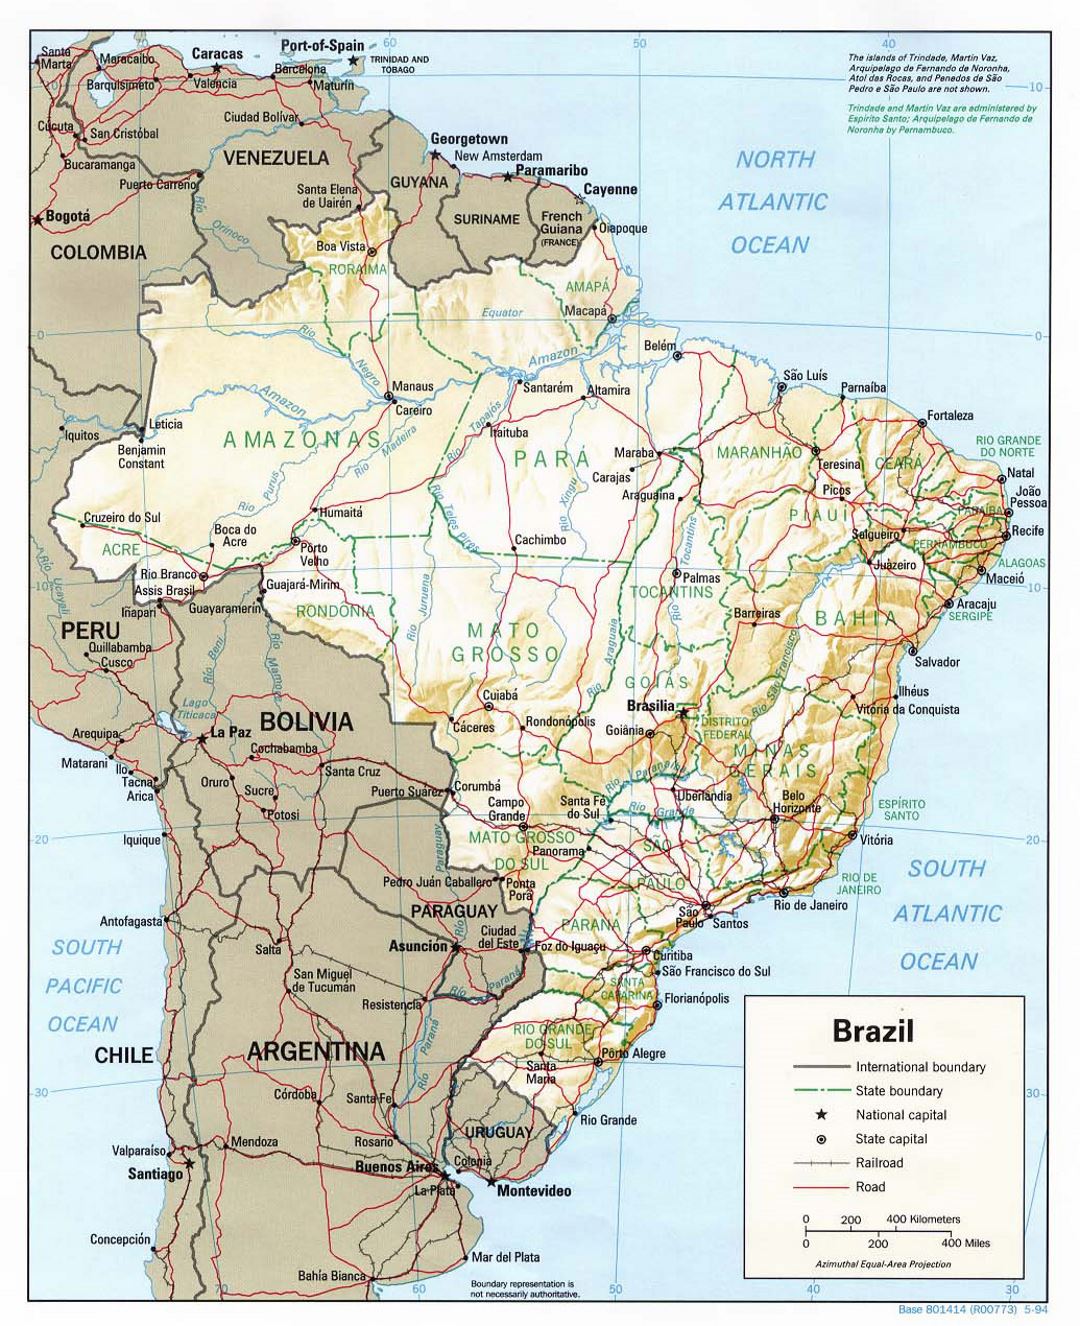 Grande mapa político y administrativo de Brasil con socorro, carreteras y principales ciudades - 1994